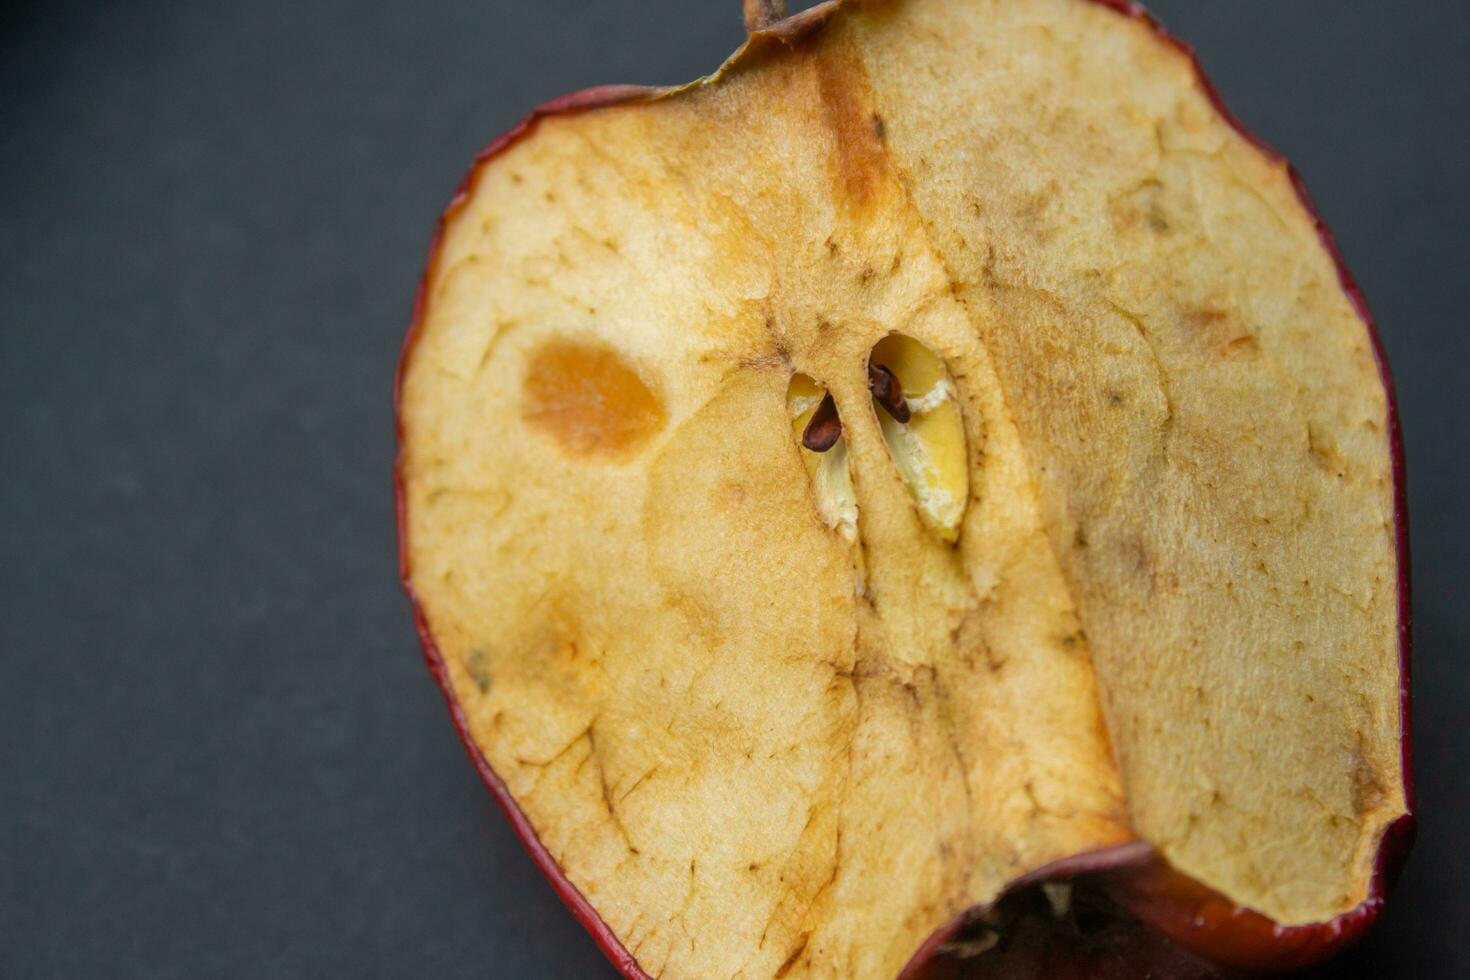 möglig eller rutten äpple, närbild Foto